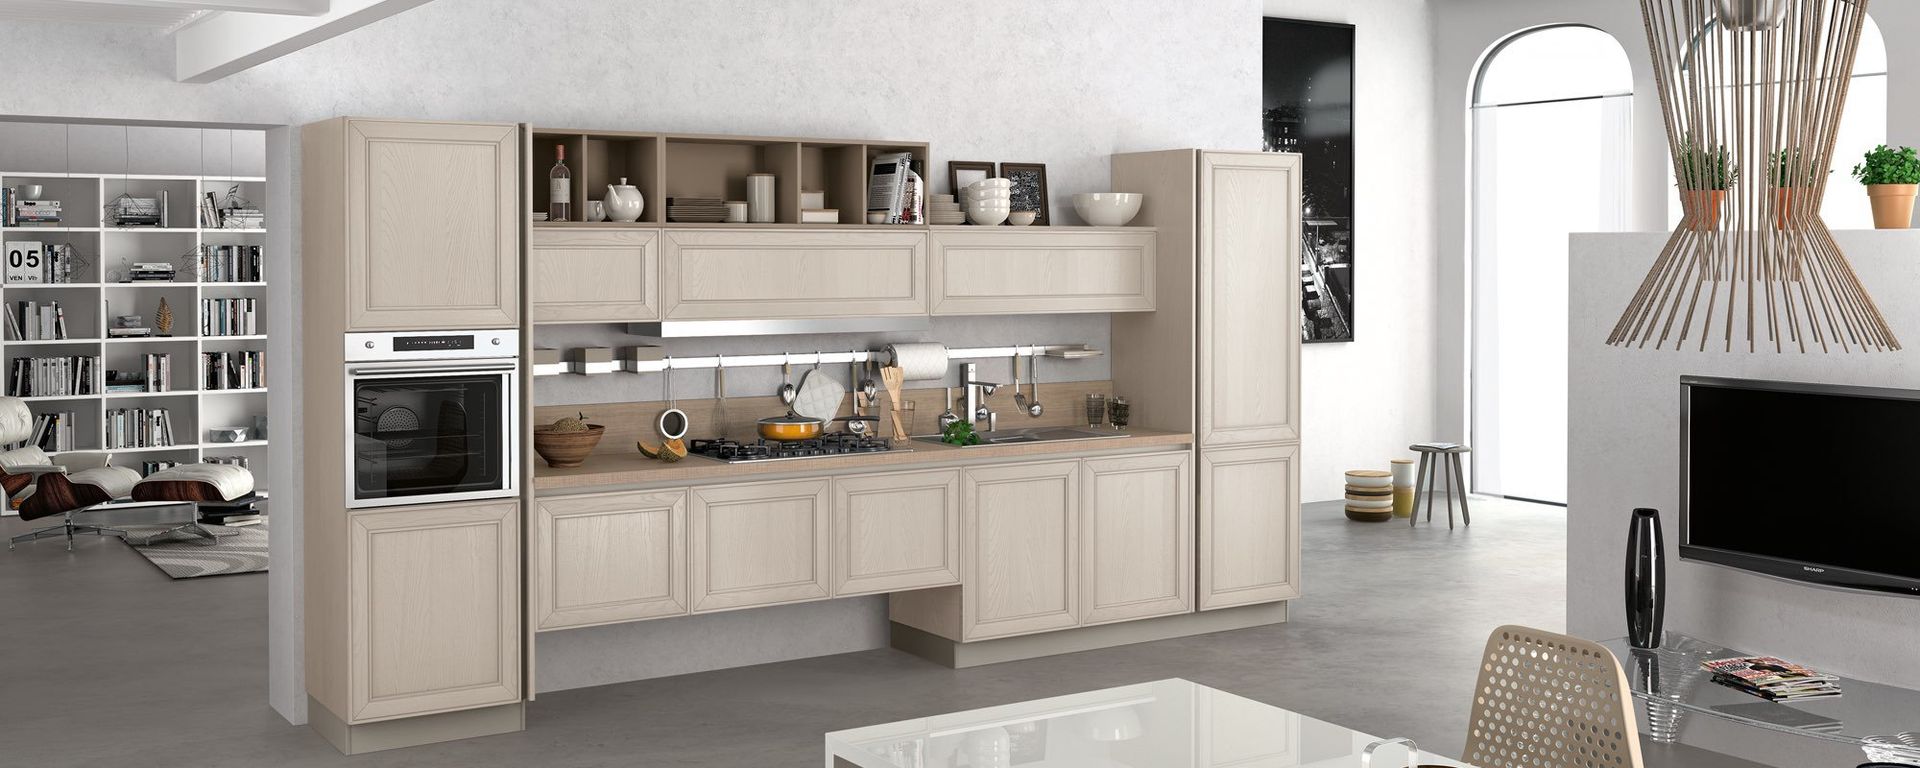 vista laterale di una cucina moderna in legno bianco - MAXIM